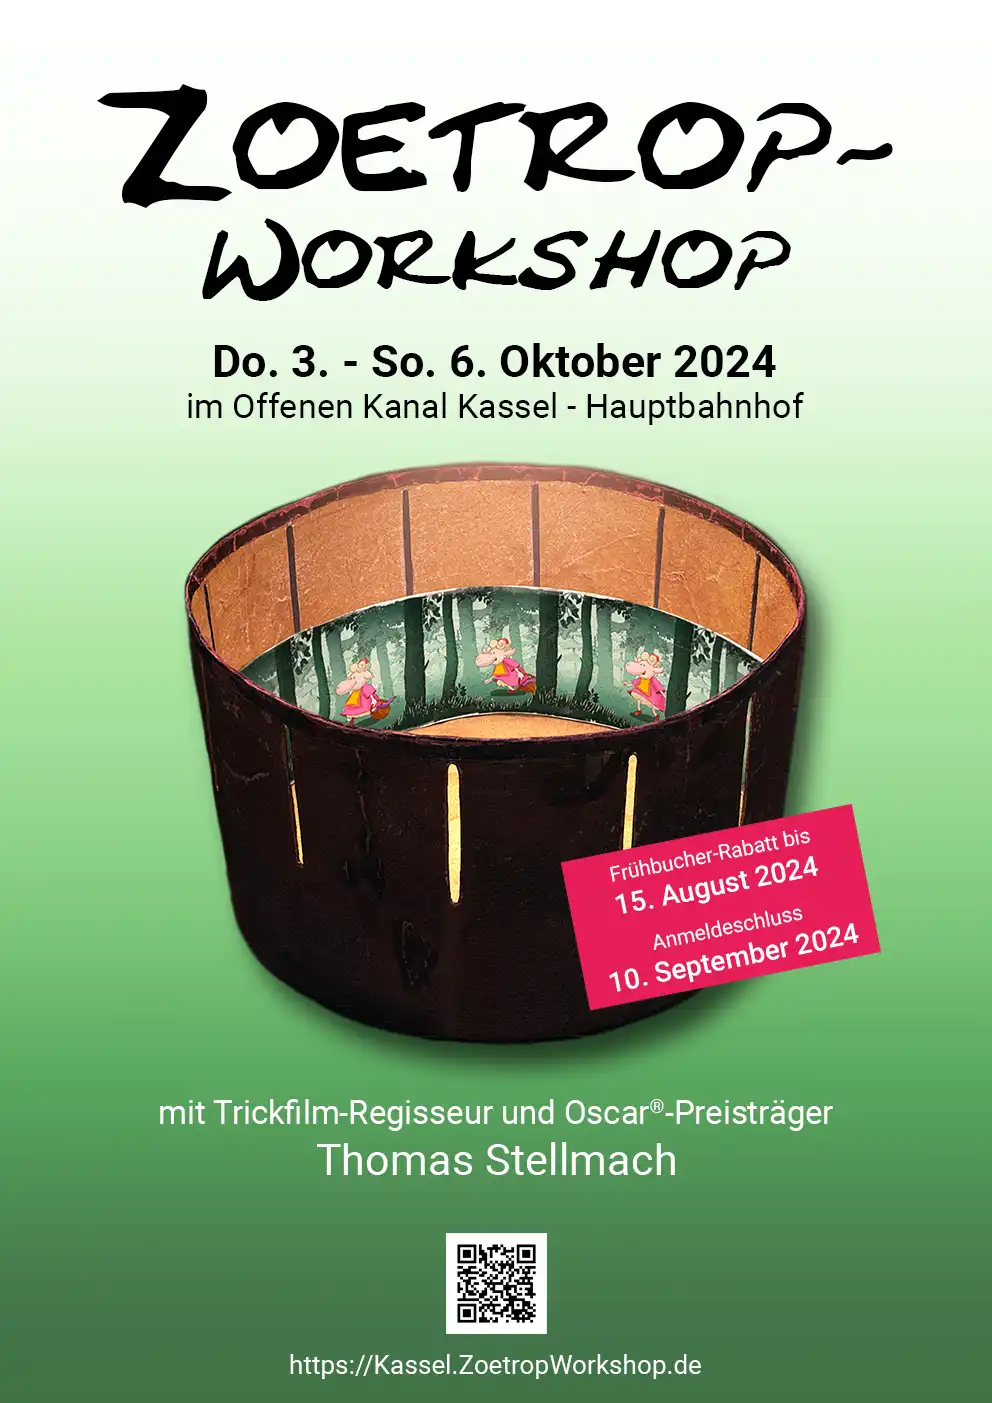 Poster Zoetrop-Workshop mit Thomas Stellmach on 3.-6. Oktober 2024 in Kassel